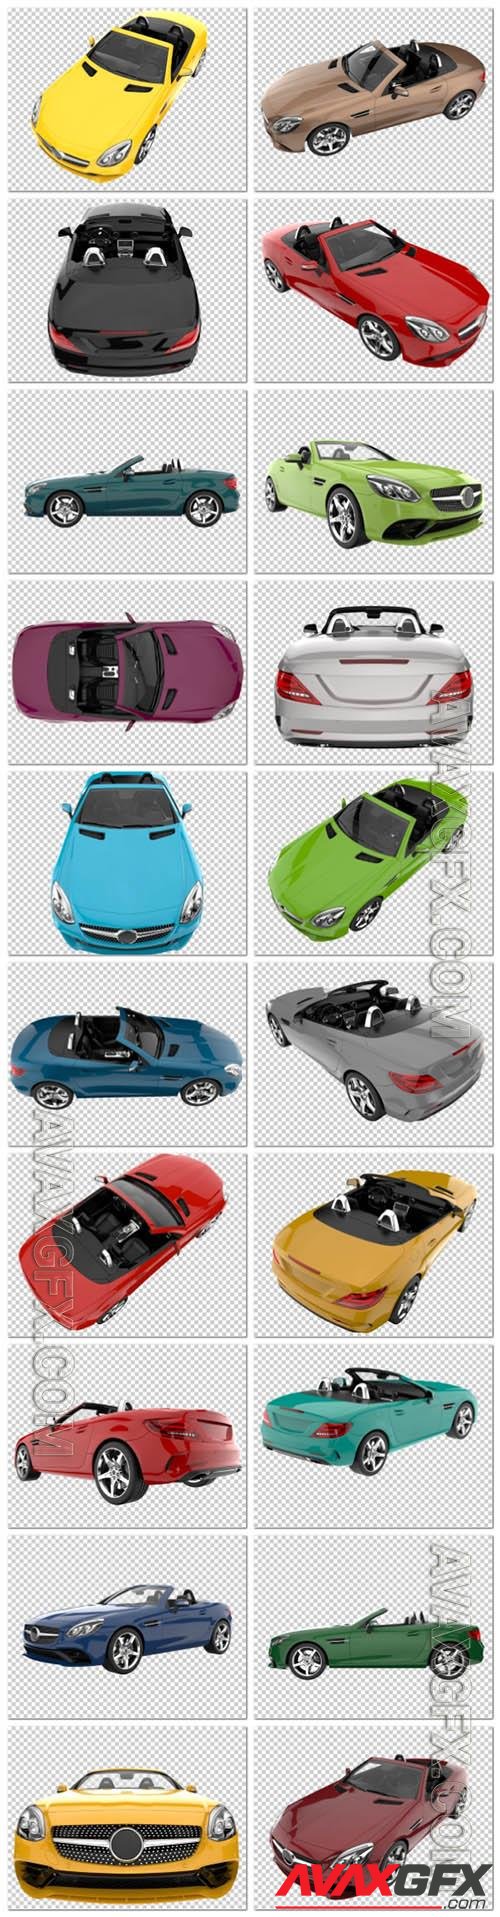 20 Sport car on transparent background, 3d rendering - illustration in psd vol 1